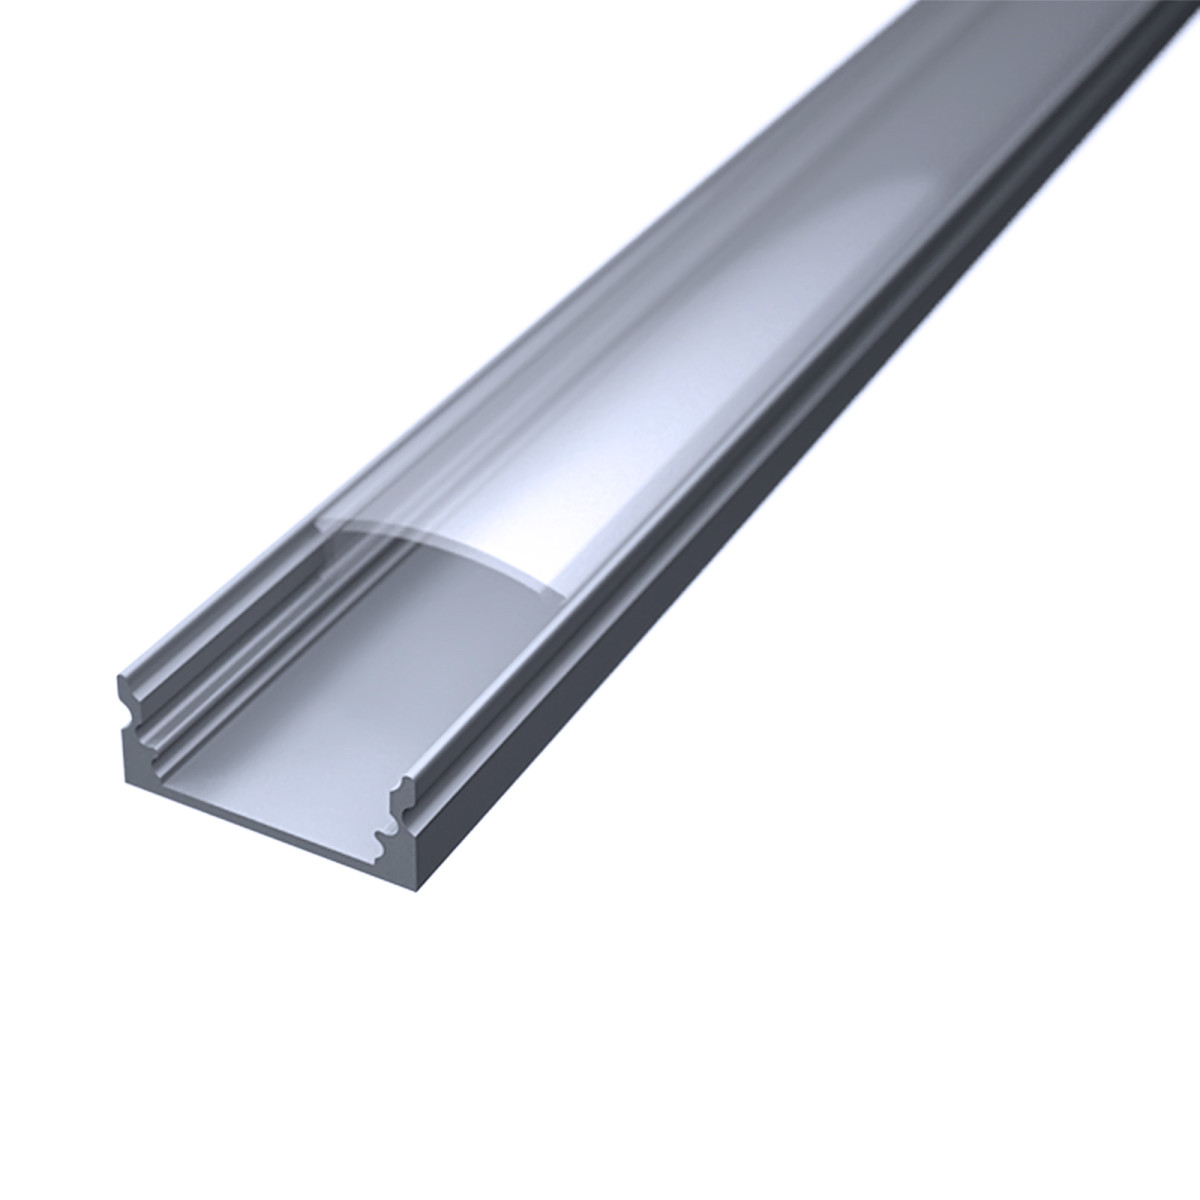 LED Flachprofil "Slim-Line" | Abdeckung transparent | Zuschnitt auf 181cm |